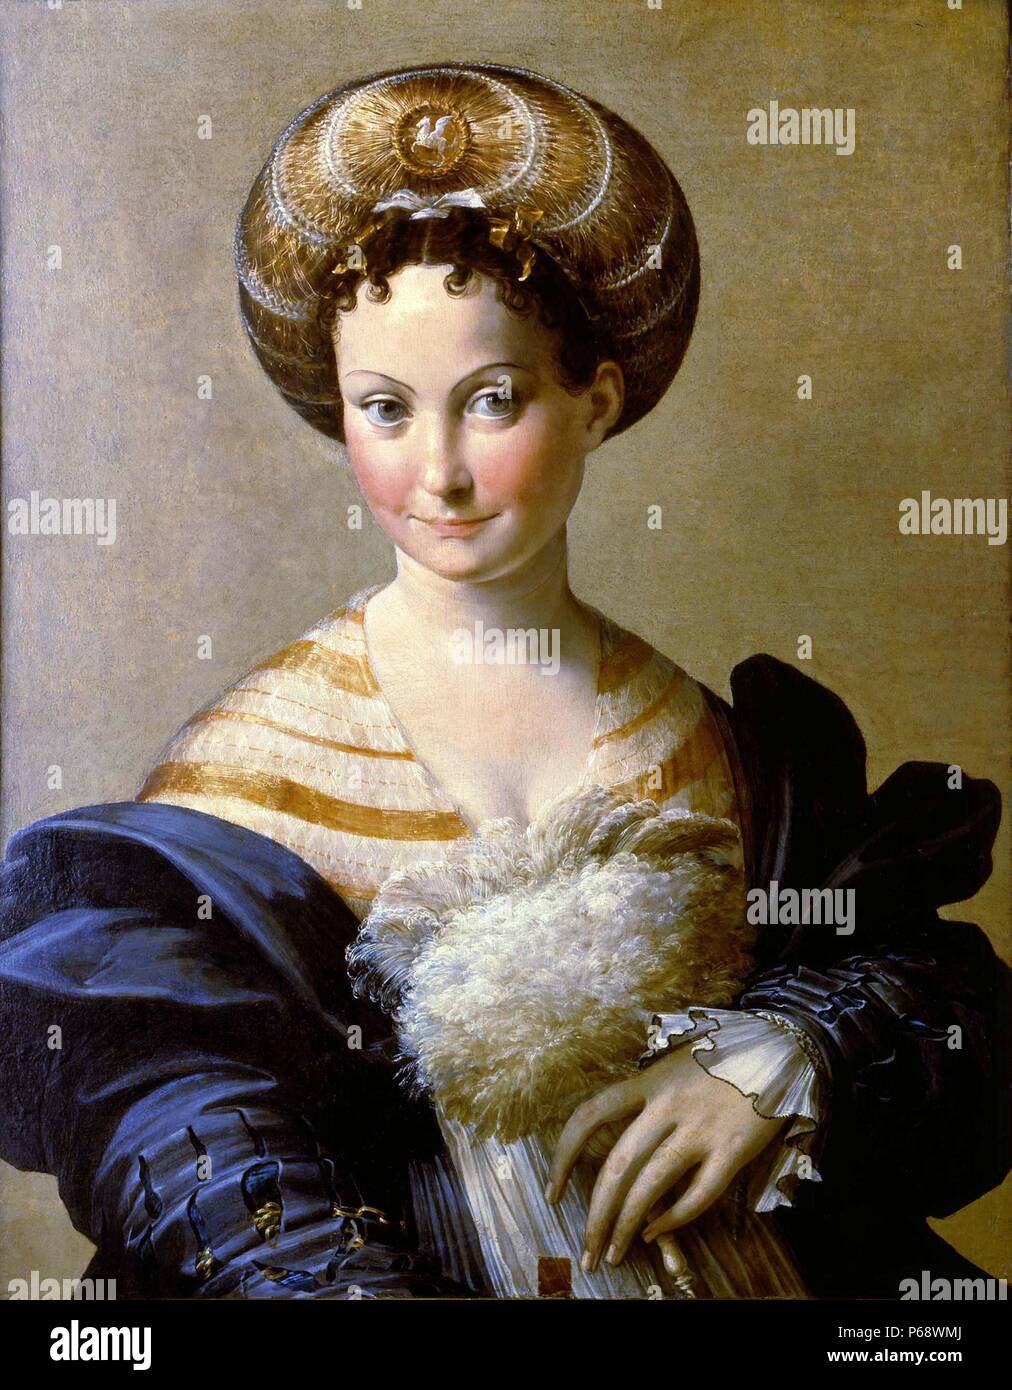 L'esclave turc (Portrait d'une jeune femme ; italien : Schiava turca) est une peinture de l'artiste maniériste italien Parmigianino, exécutés autour de 1533. Il est logé dans la Galleria nazionale di Parma, Italie du nord. Banque D'Images